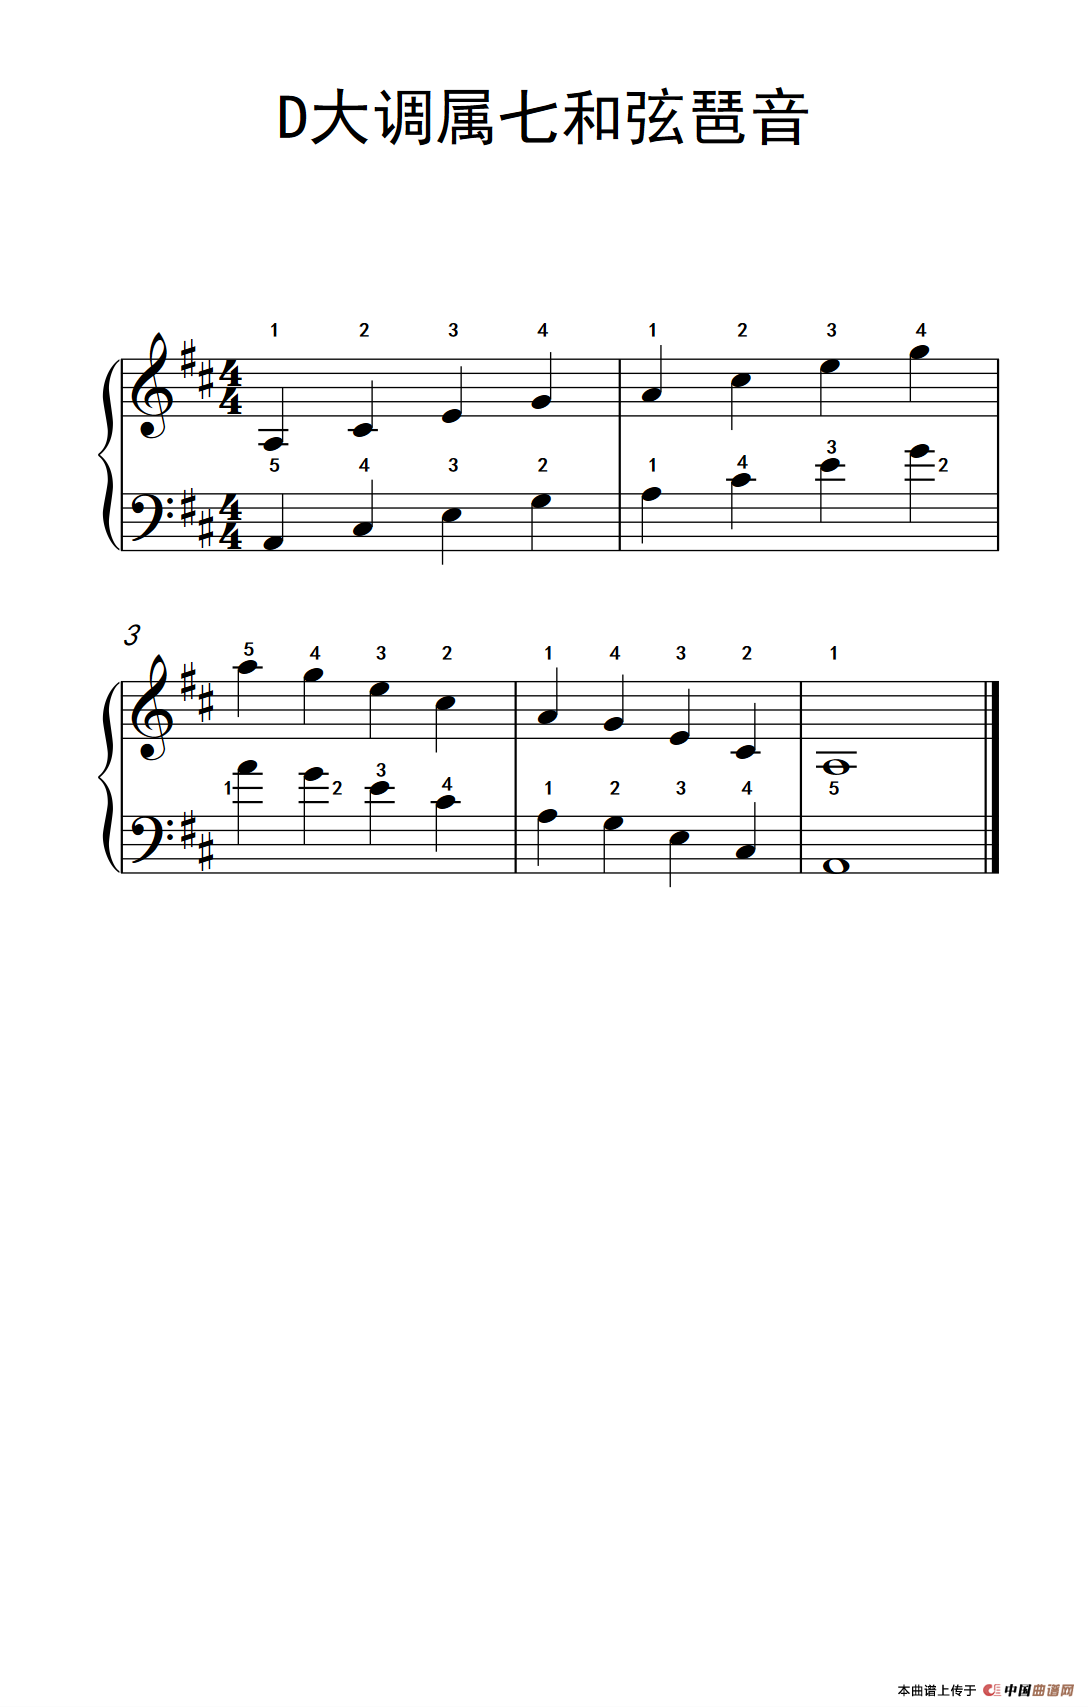 《D大调属七和弦琶音》钢琴曲谱图分享